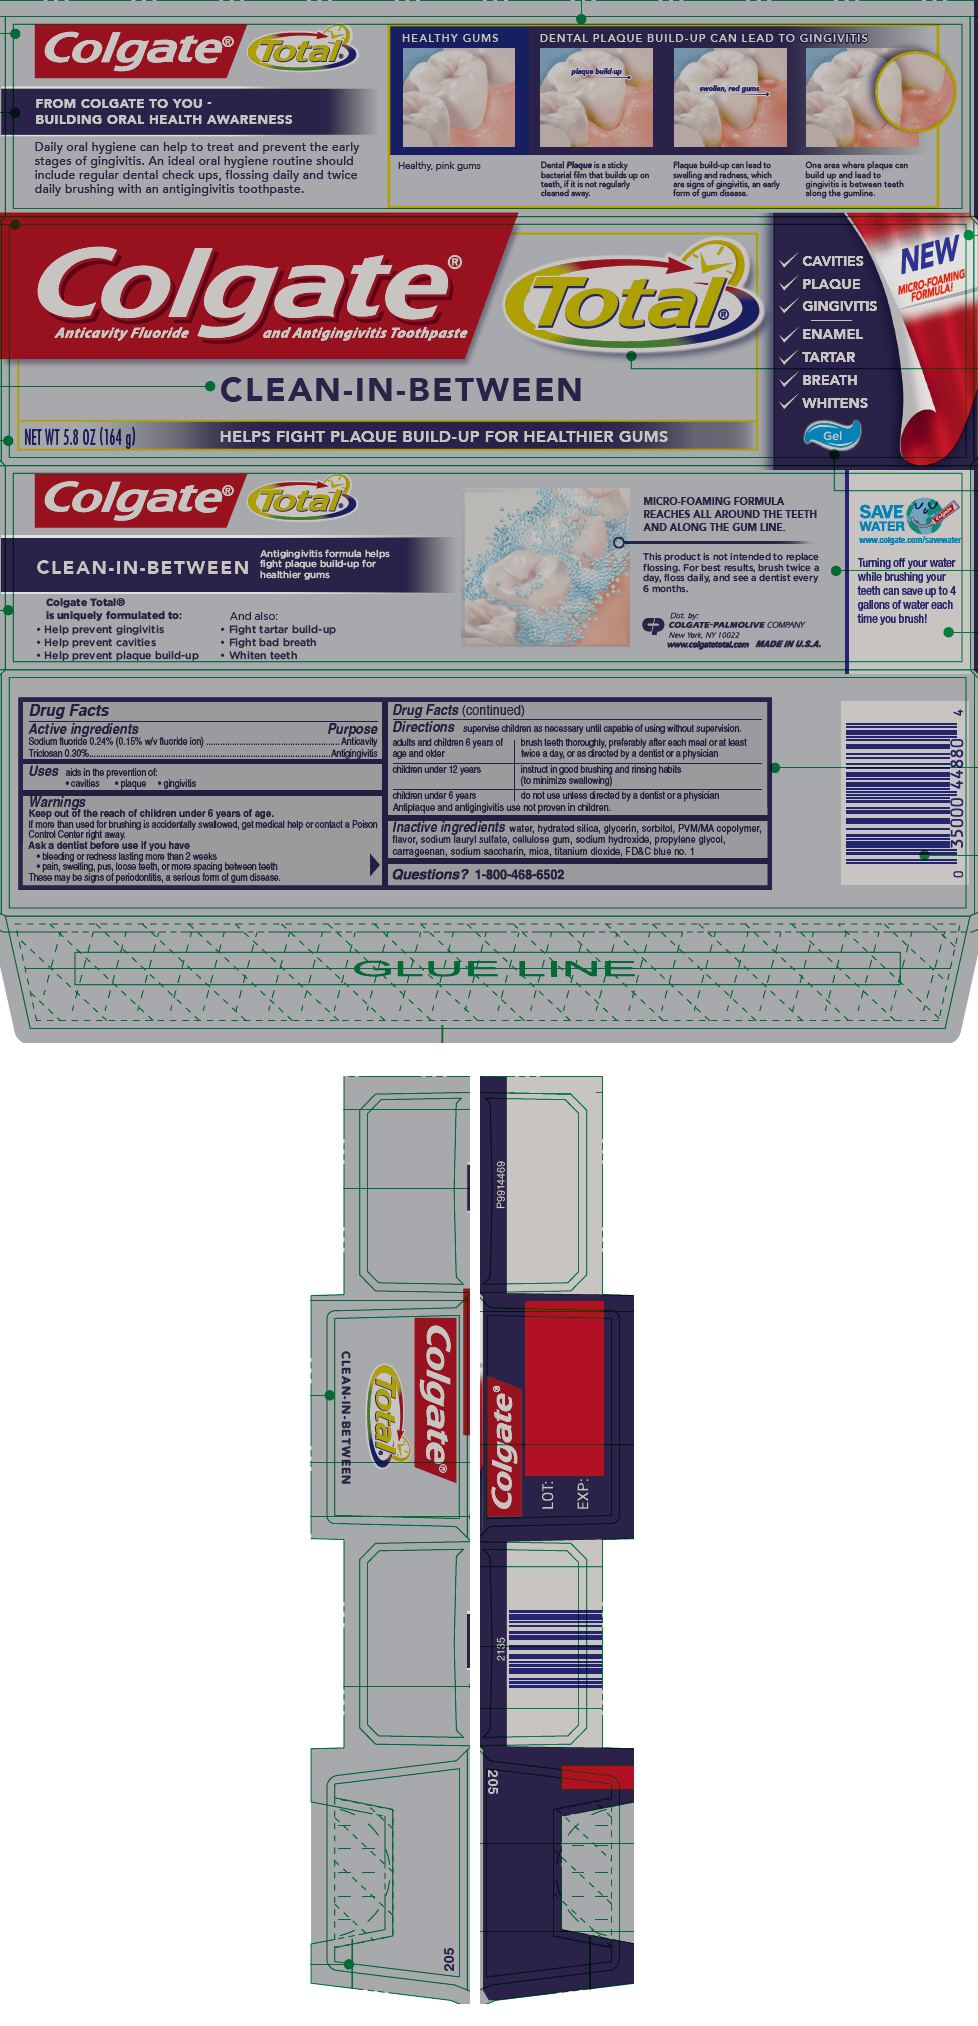 PRINCIPAL DISPLAY PANEL - 164 g Tube Carton